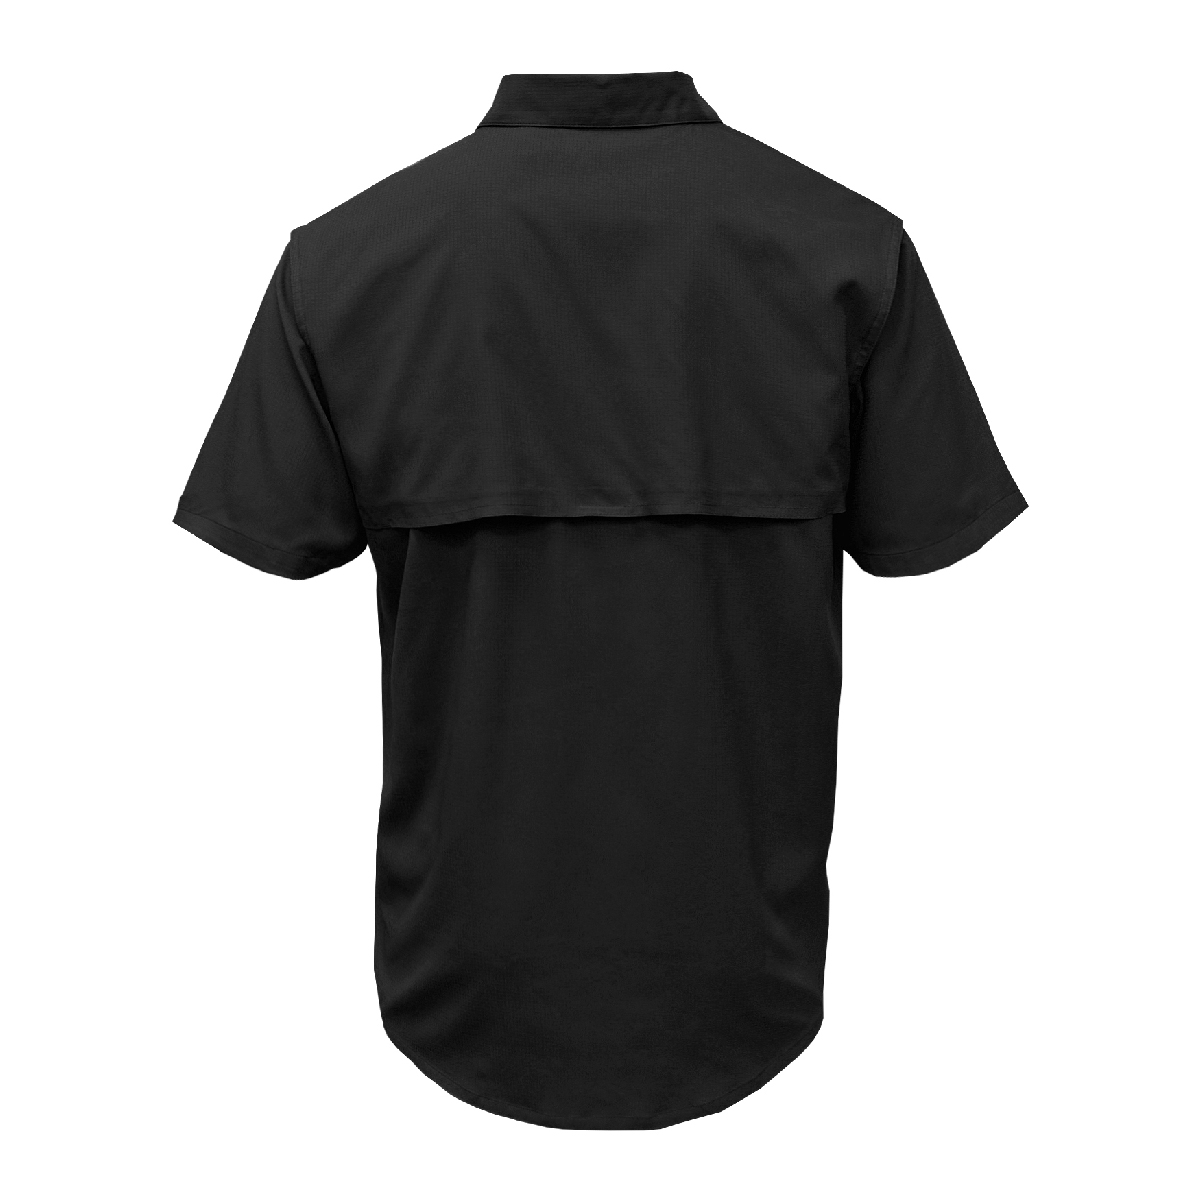 Pencco White Logo Black Fishing Shirt